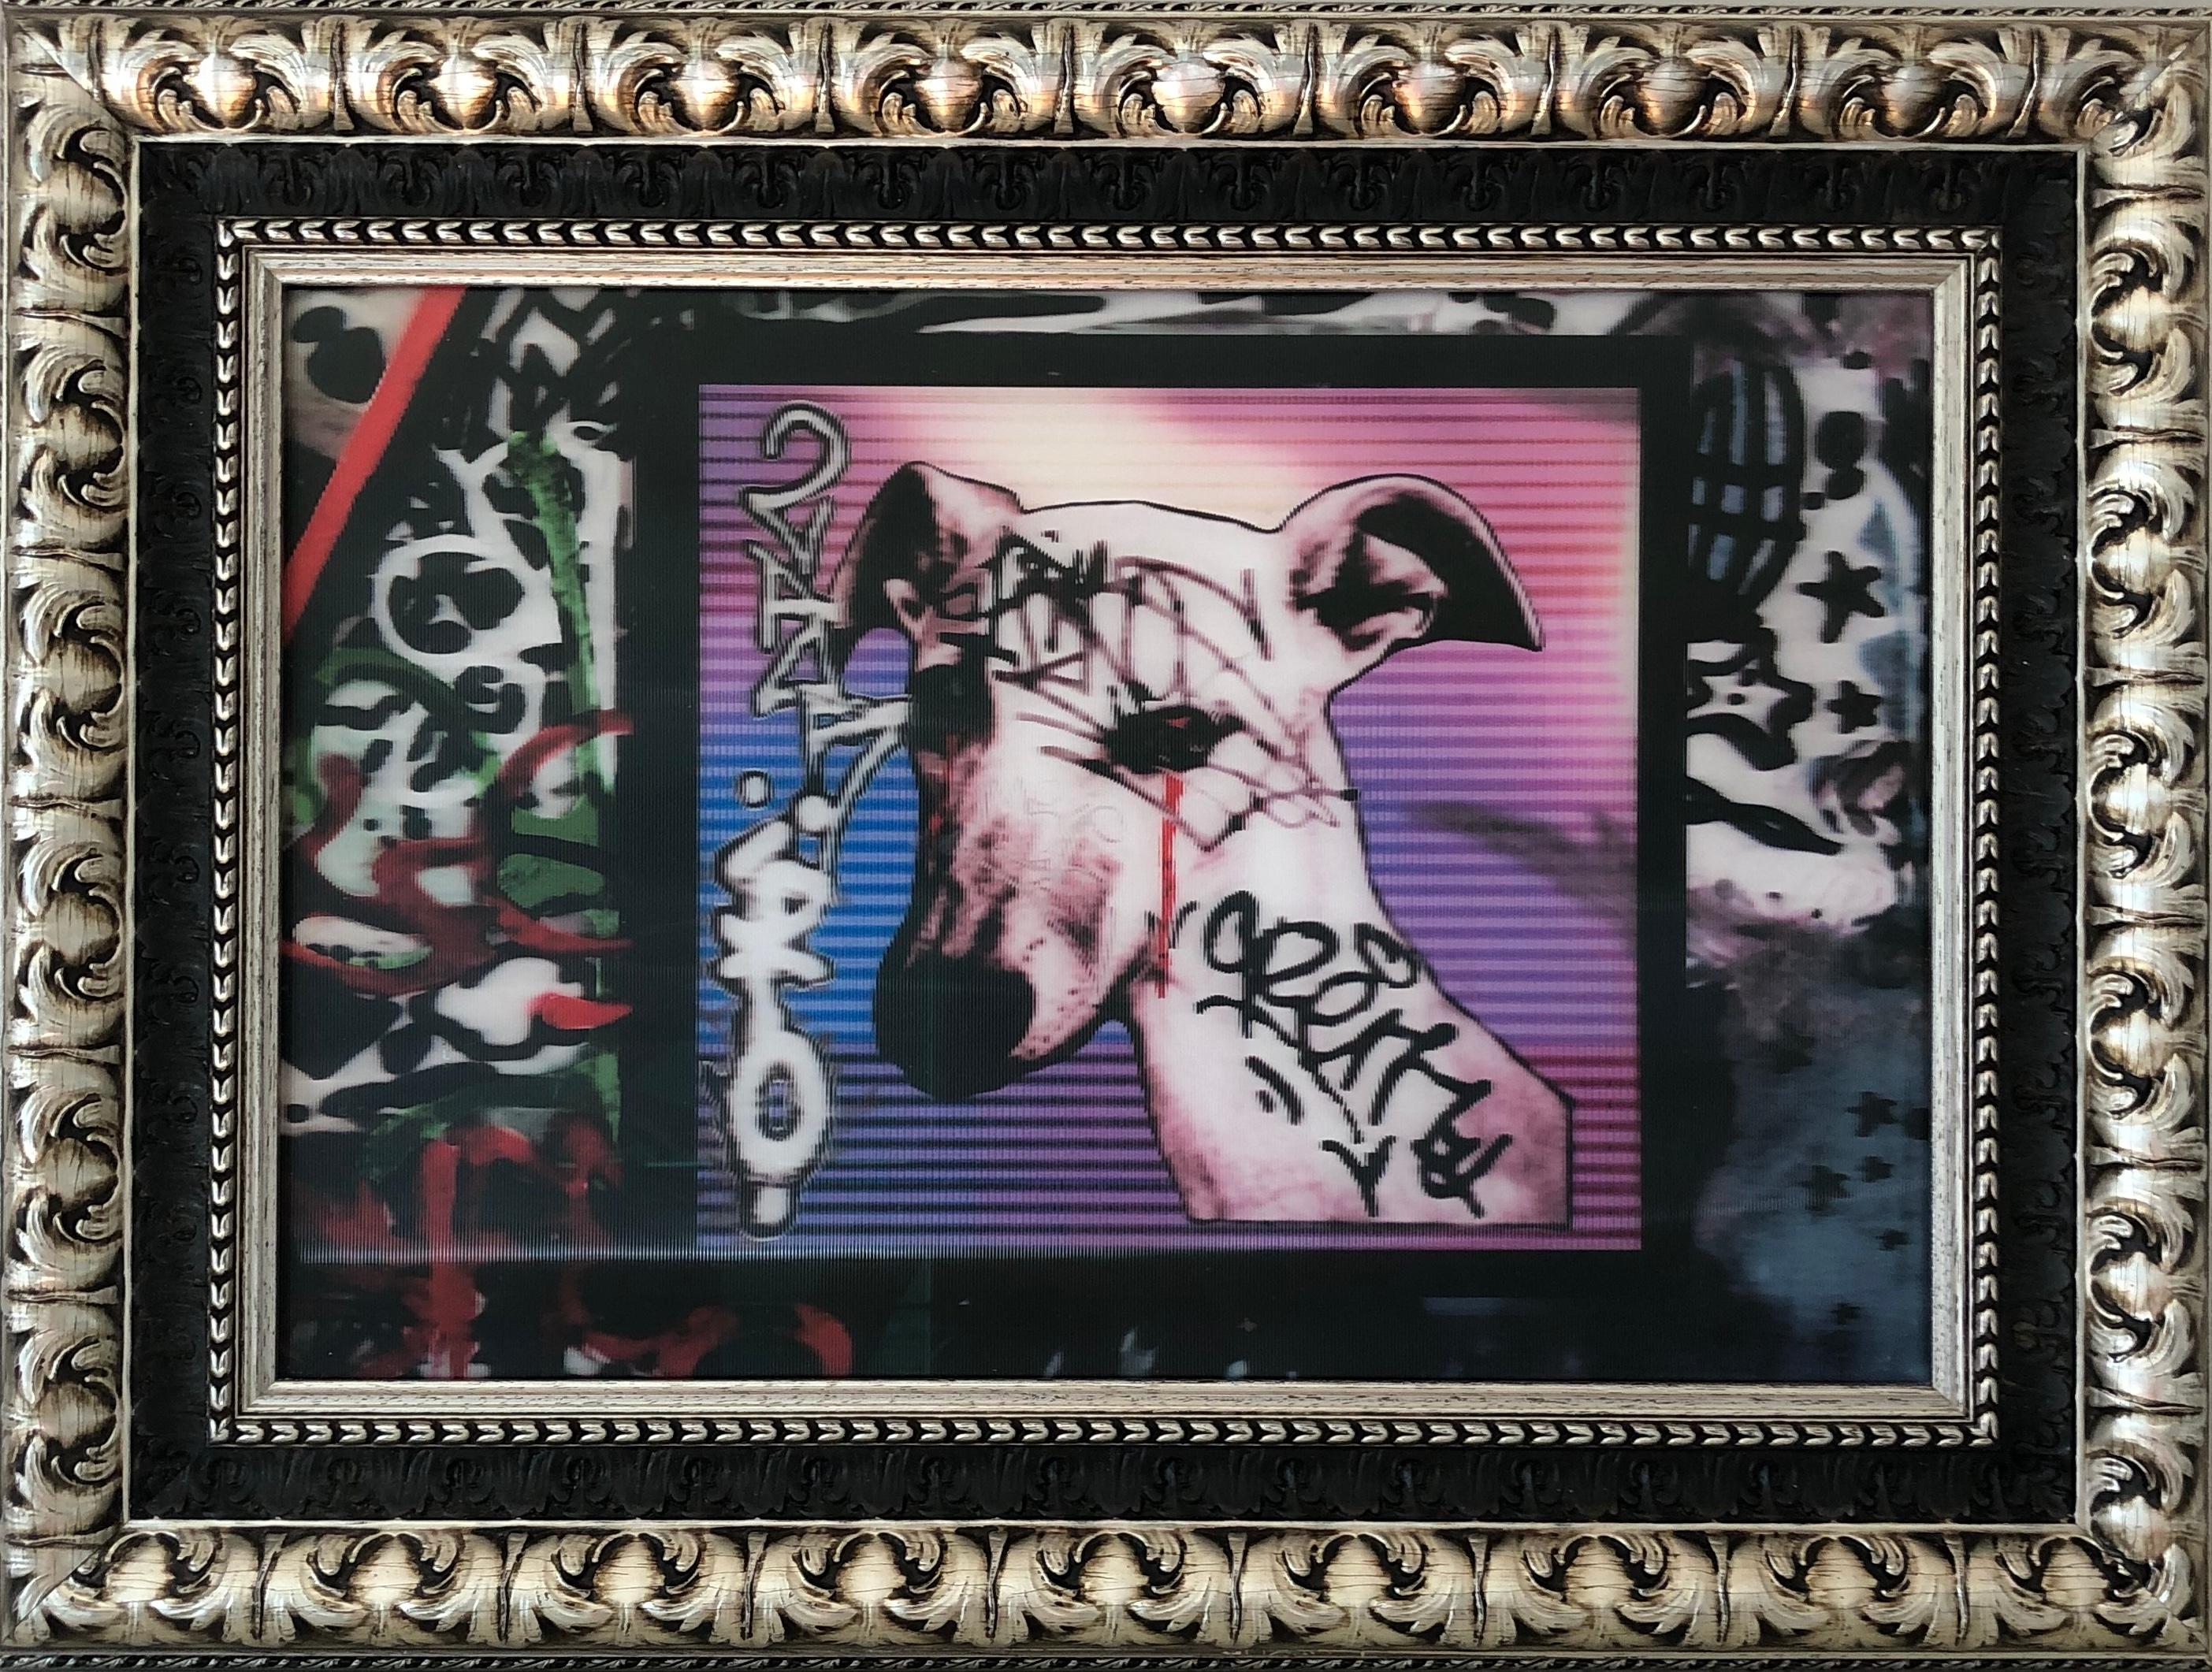 Le Chien de les Frigos - photo lenticulaire, graffiti en rose, rouge, blanc, bleu, noir